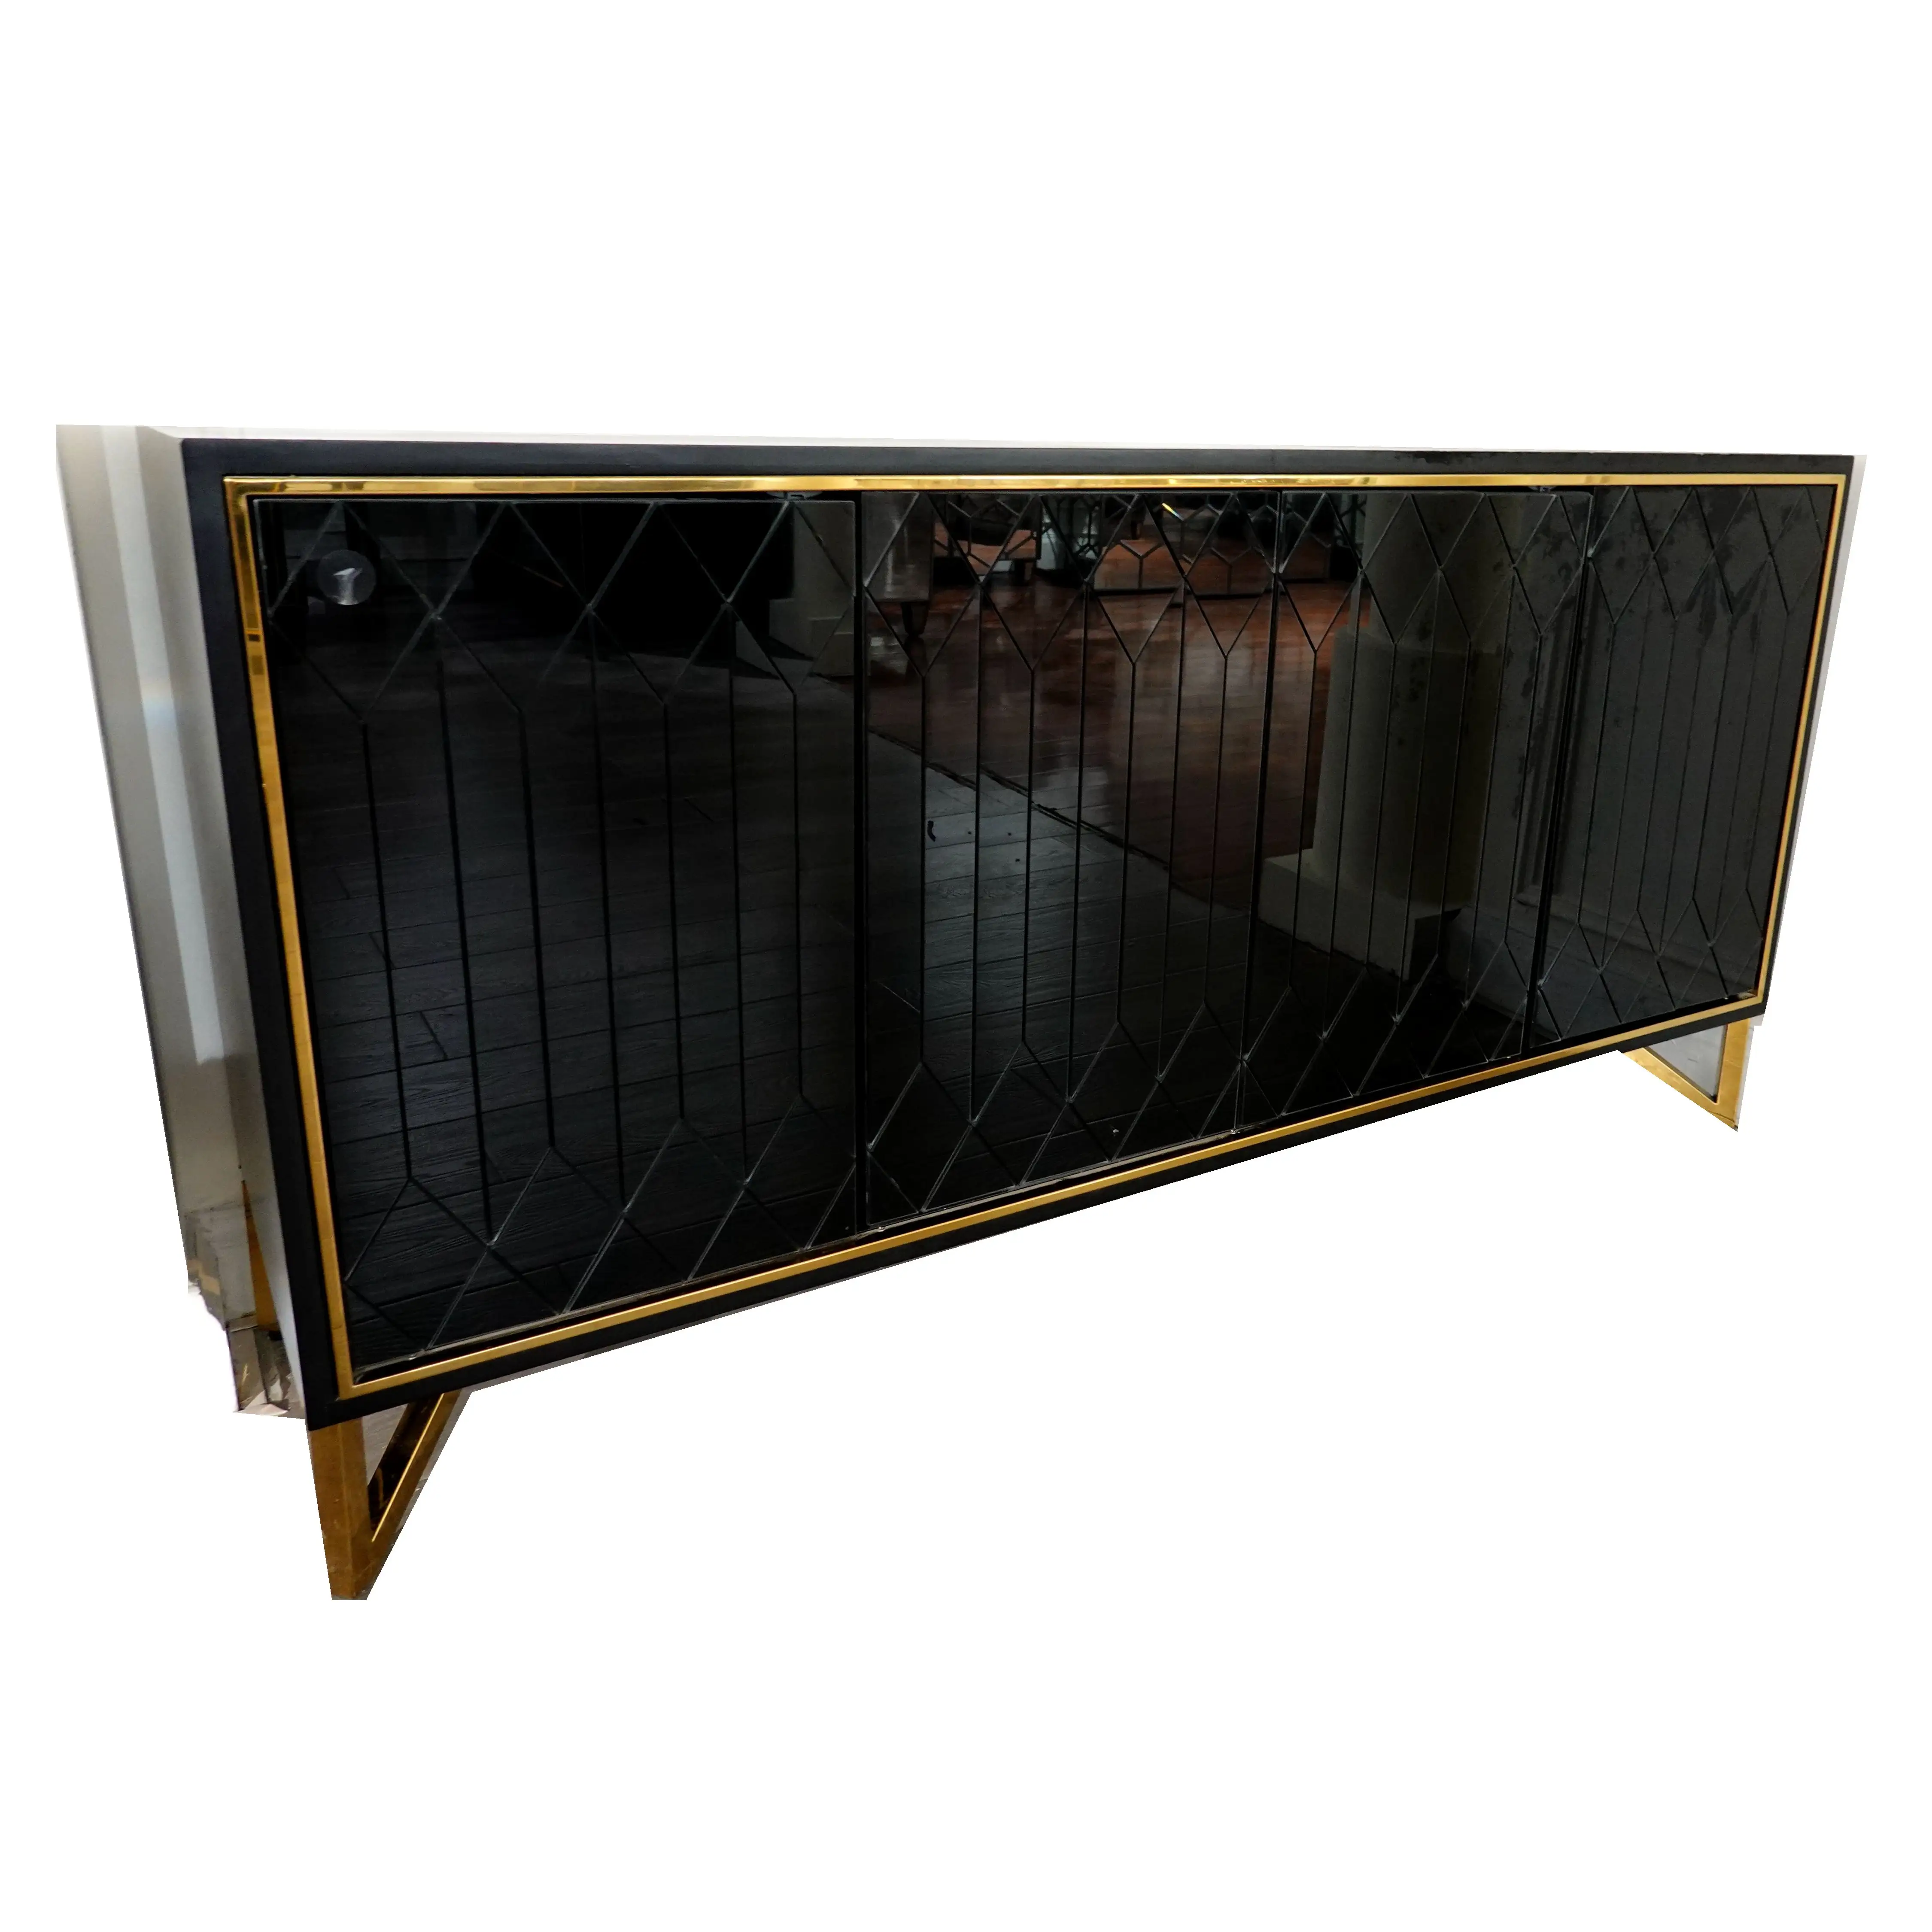 Guanye Hotsale aparador moderno estilo conciso de muebles de madera espejo negro aparador bufé del gabinete